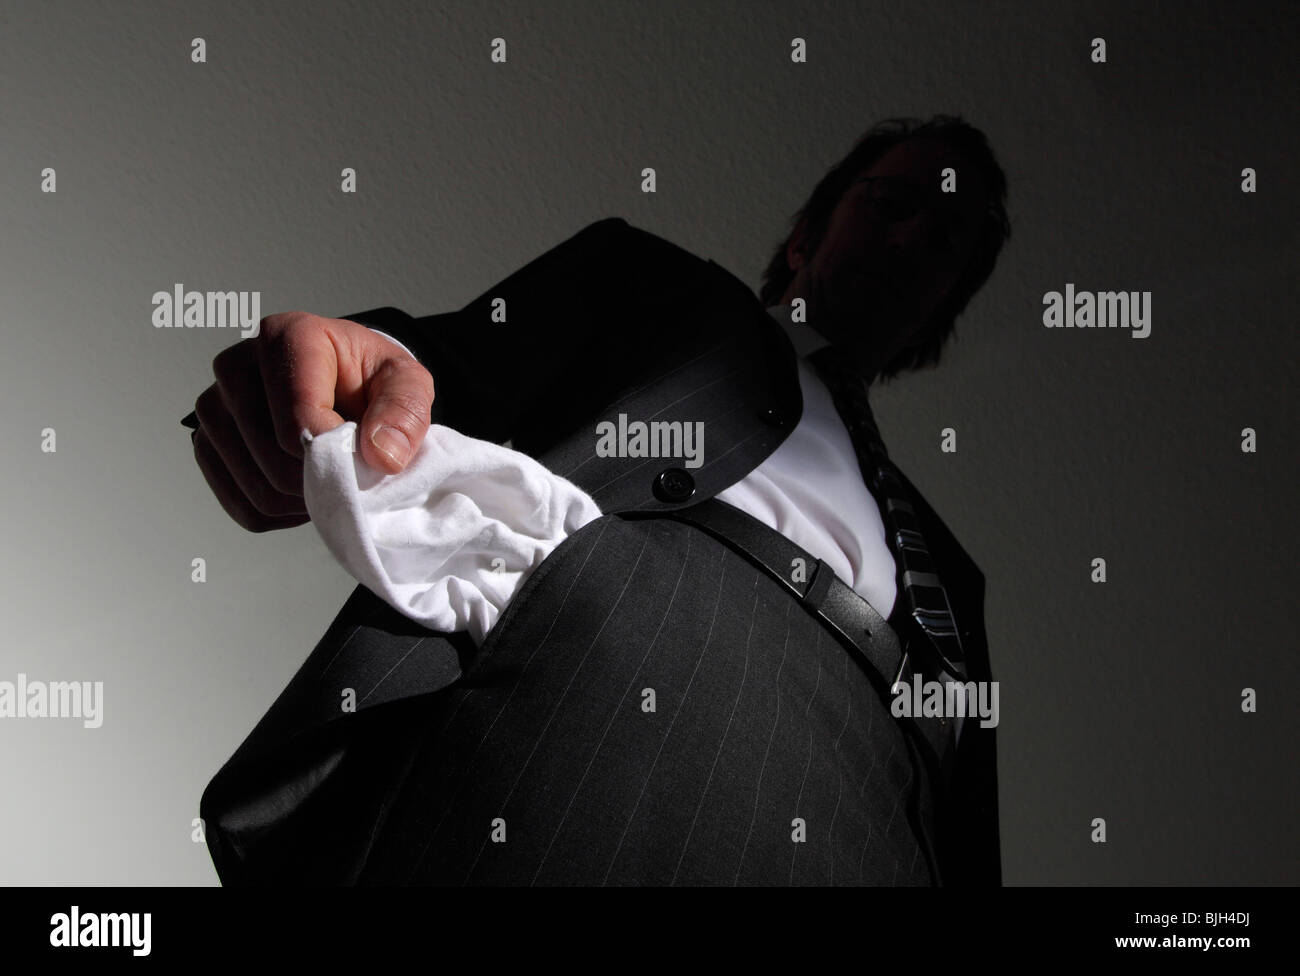 Homme en costume avec les poches vides. Symbole : l'insolvabilité, la faillite nationale, etc. Banque D'Images